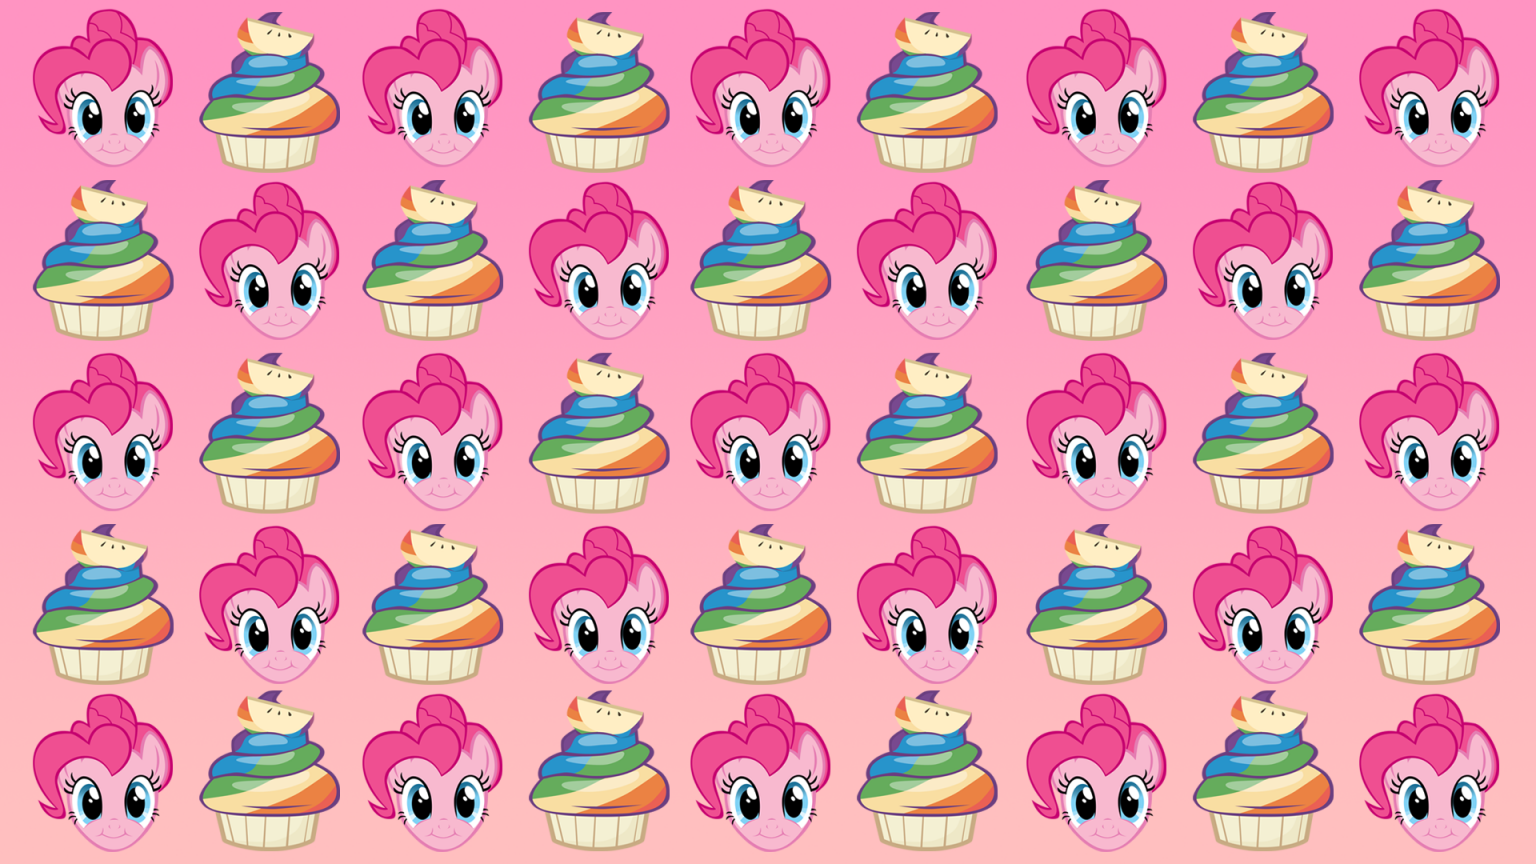 Free download Cute Cartoon Cupcake .wallpaperafari.com